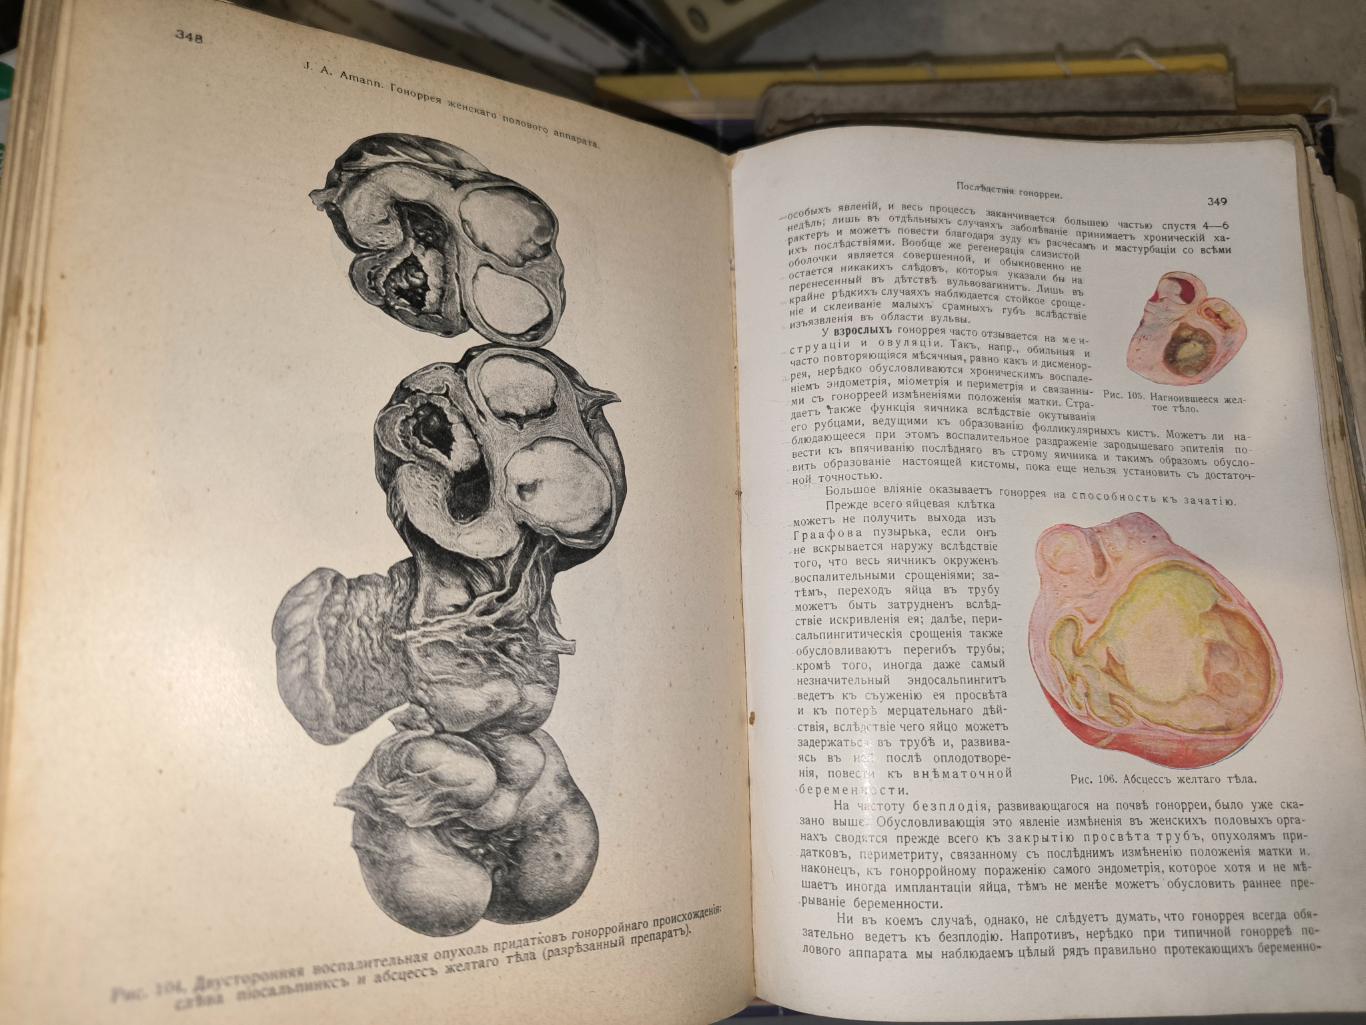 Менге Опитц Руководство по гинекологии 1914 6